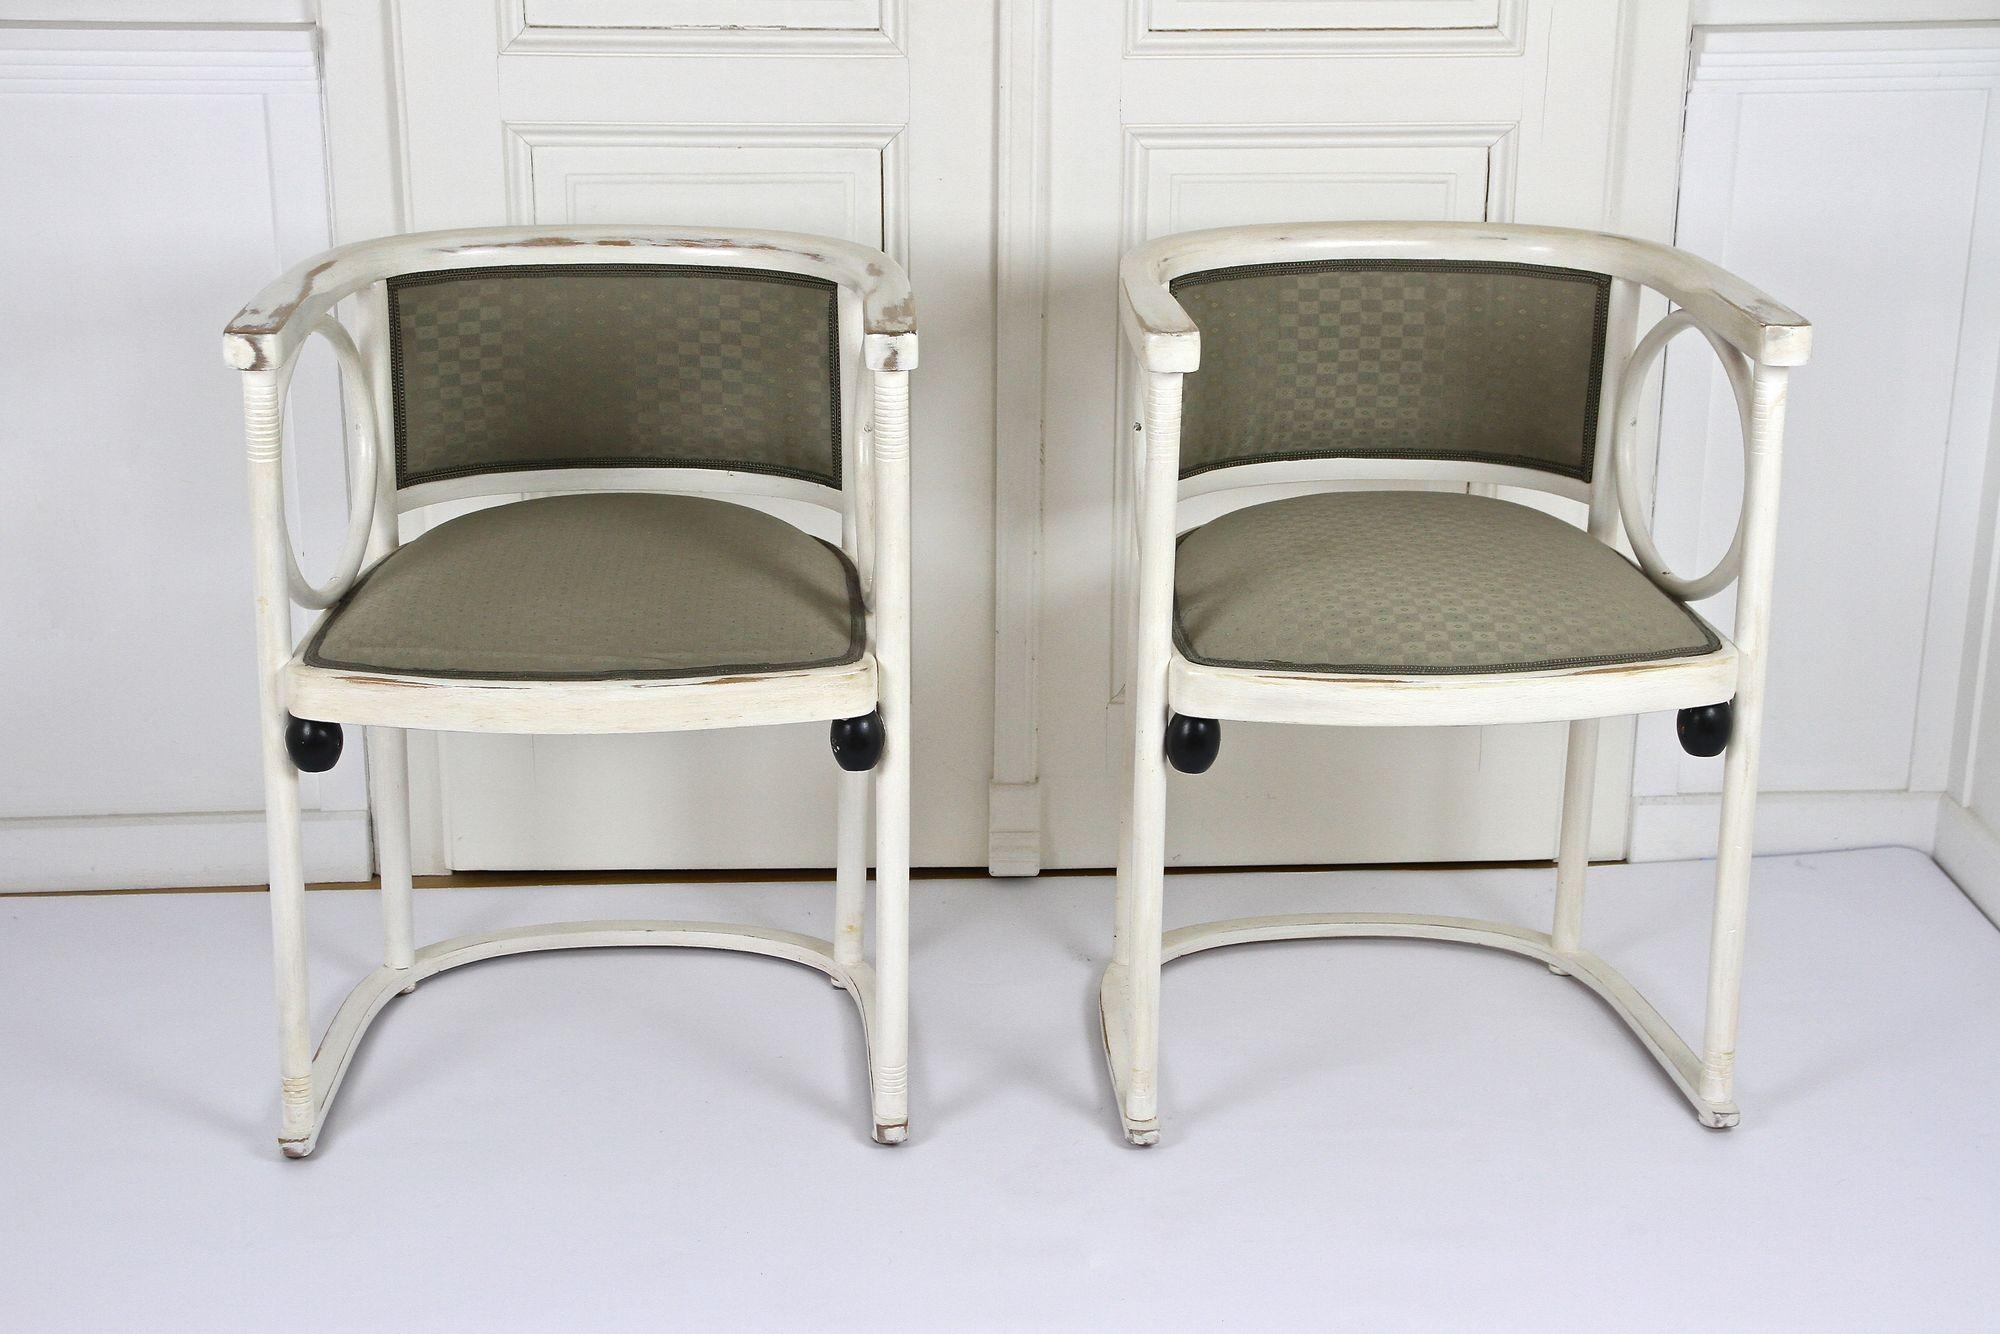 Fantastisches Paar weißer Thonet-Sessel im Jugendstil aus der Zeit um 1905 in Österreich. Das zeitlose Design dieses kultigen Jugendstilsessels stammt aus der Feder von keinem Geringeren als dem weltberühmten österreichischen Architekten und Pionier